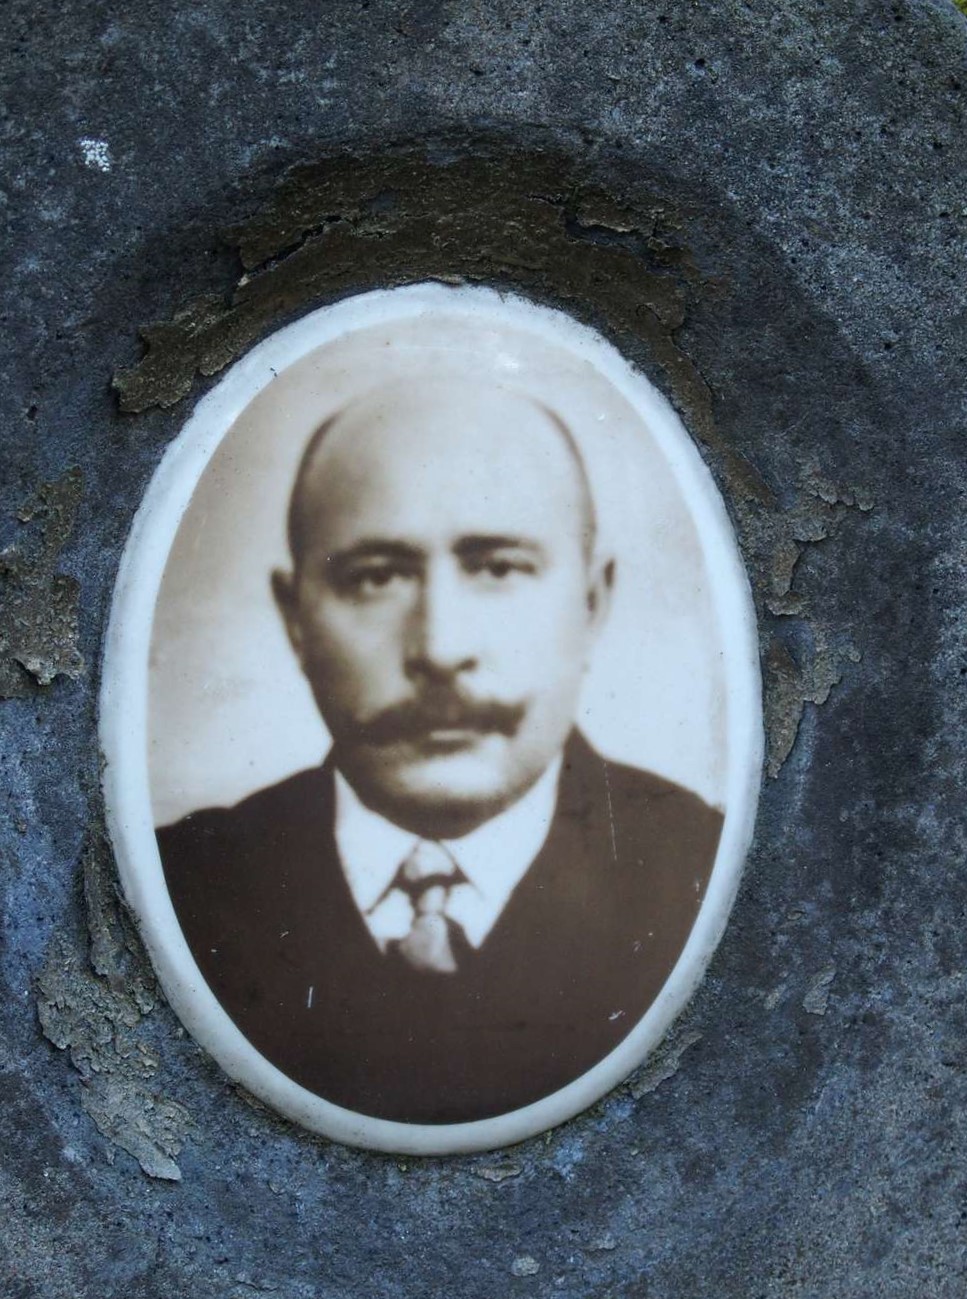 Tombstone of Viktoria Adamovich and Piotr Adamovich